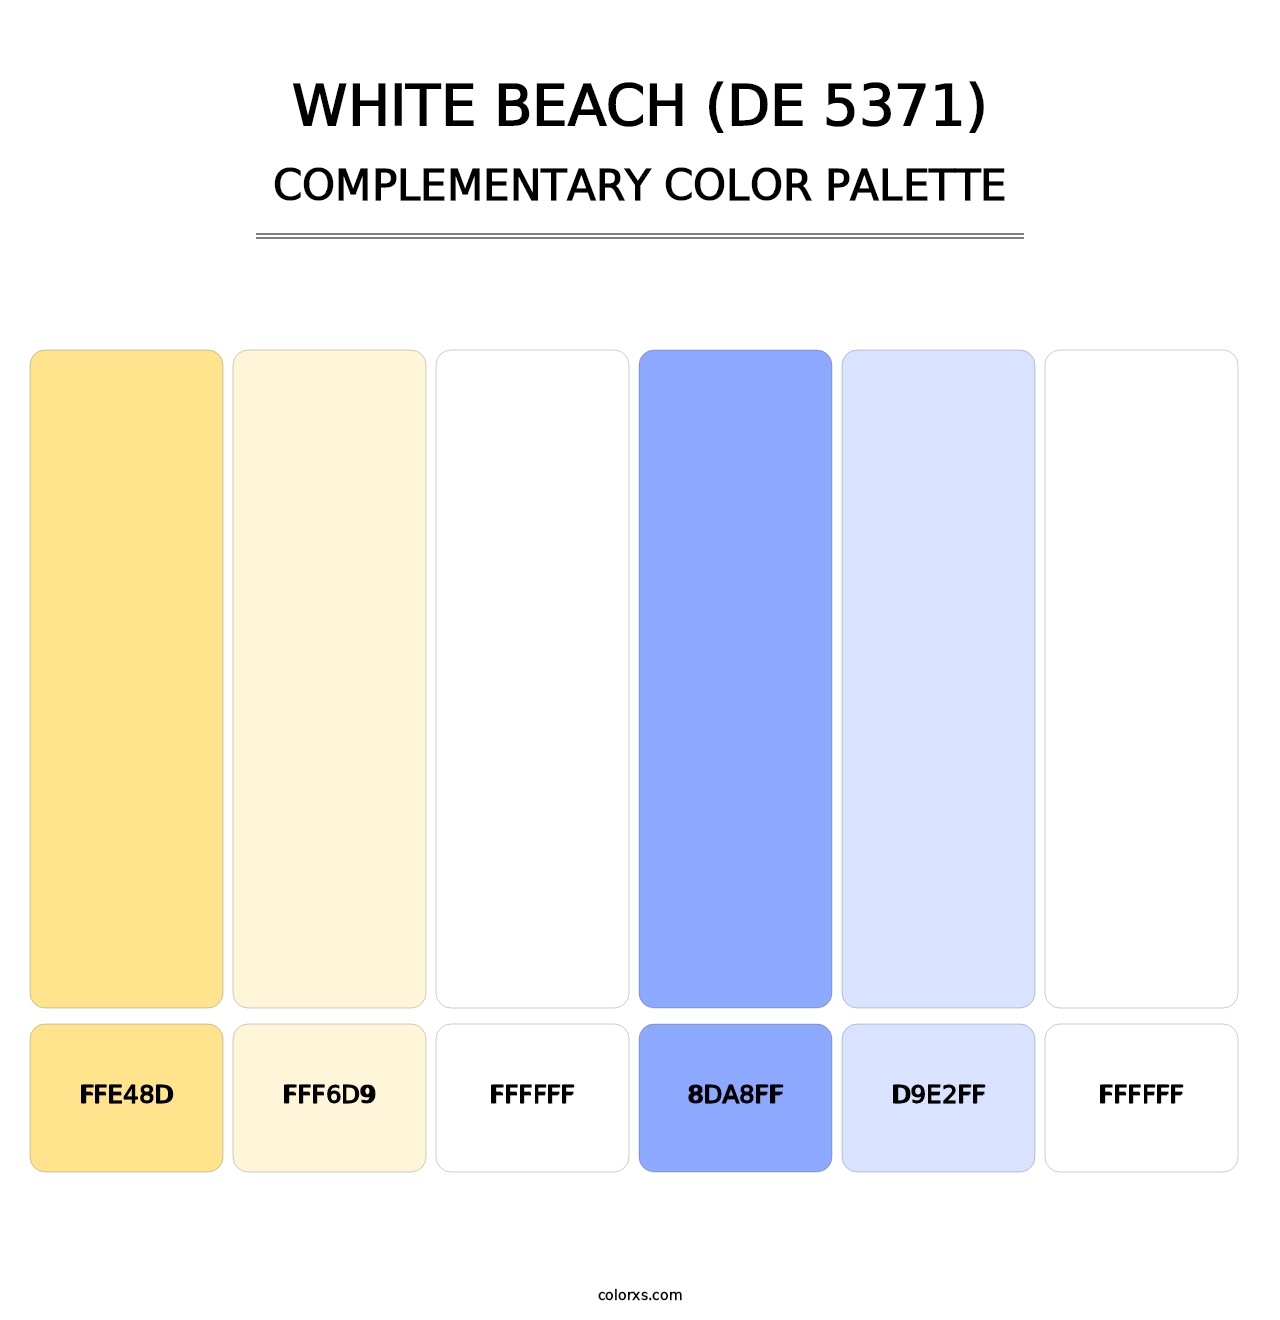 White Beach (DE 5371) - Complementary Color Palette